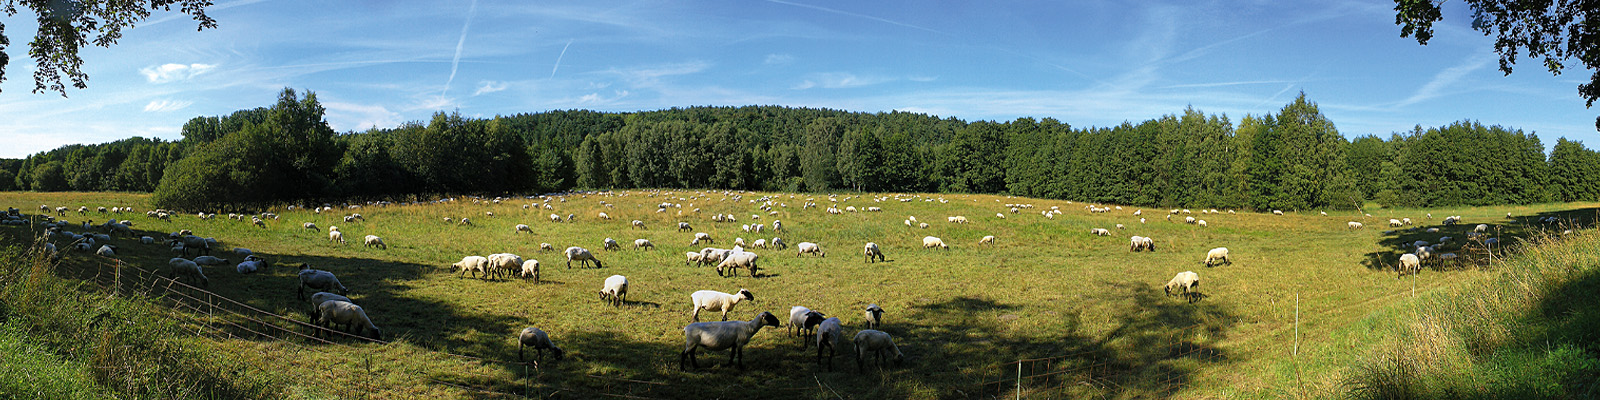 Panorama: Schafe bei Benz - Motivnummer: use-ach-02